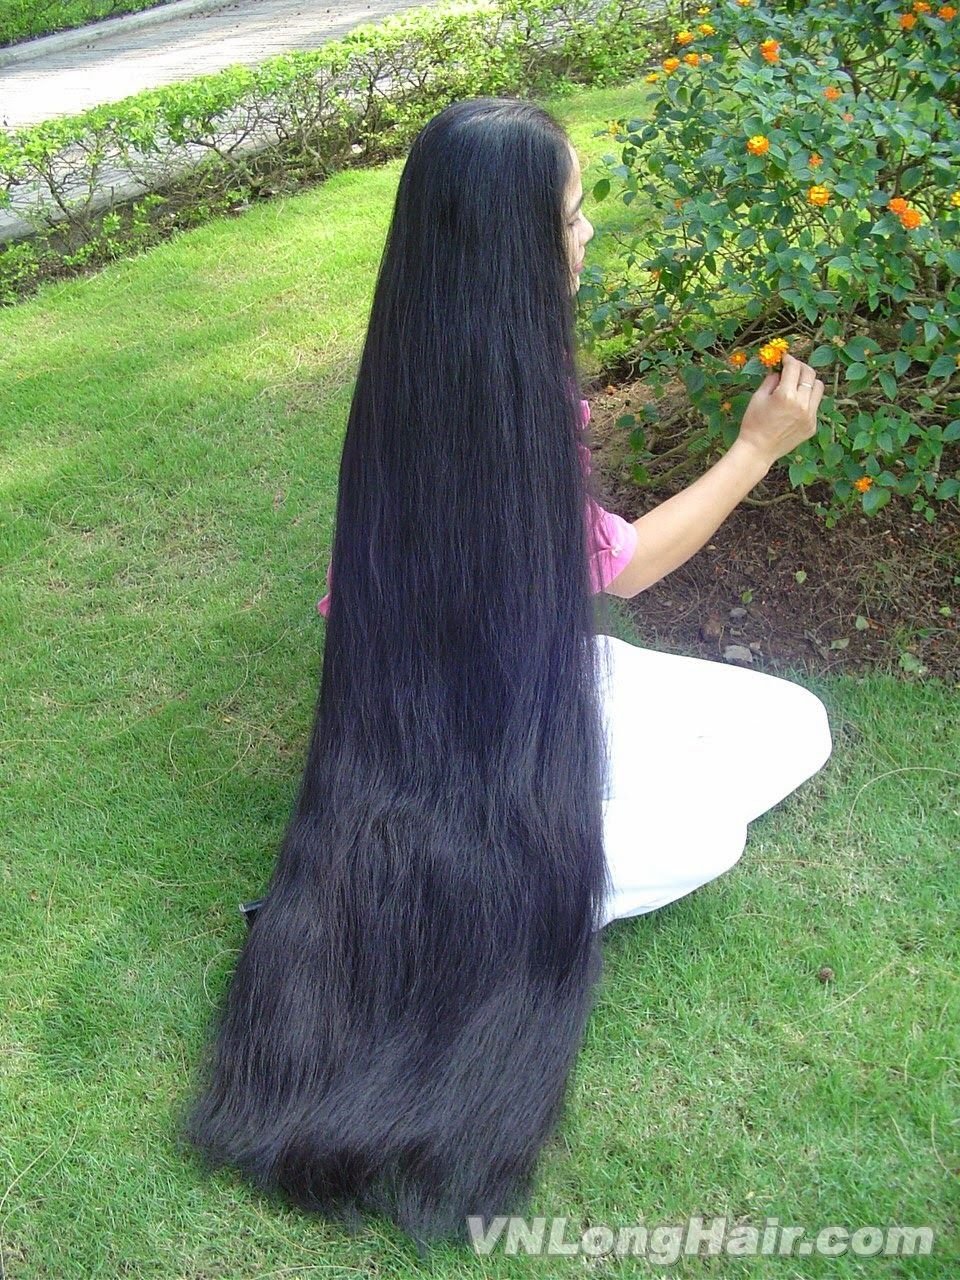 Длинные красивые волосы видео. Девушки с очень длинными волосами. Девушка с длинными черными волосами. Девочка с очень длинными волосами.